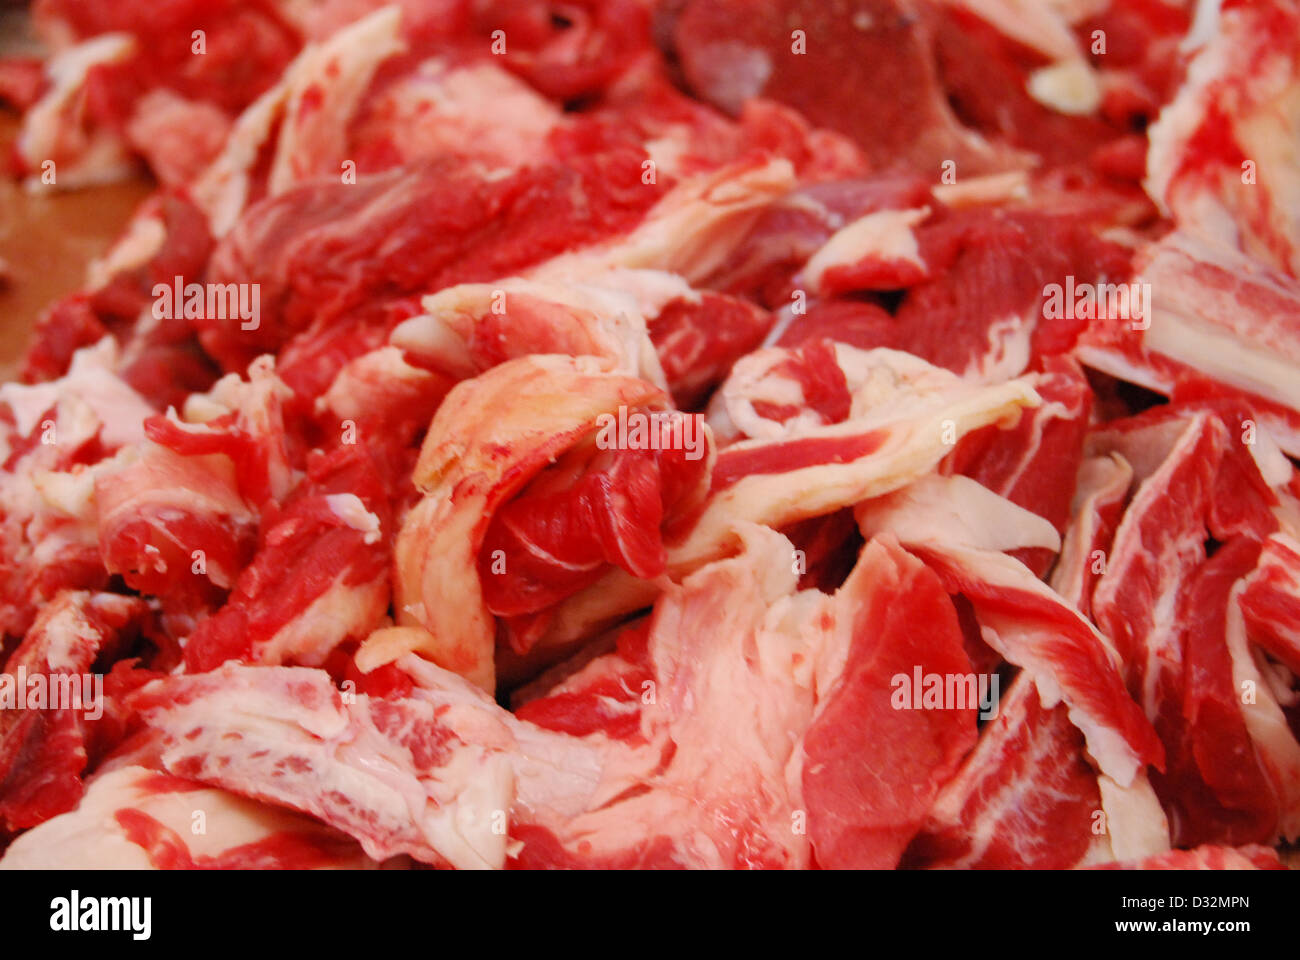 Platten von rotem und weißem Fleisch und Knochen mit Fett auf einem unordentlichen Metzger Tisch bereit, geschnitten und sortiert werden. Stockfoto